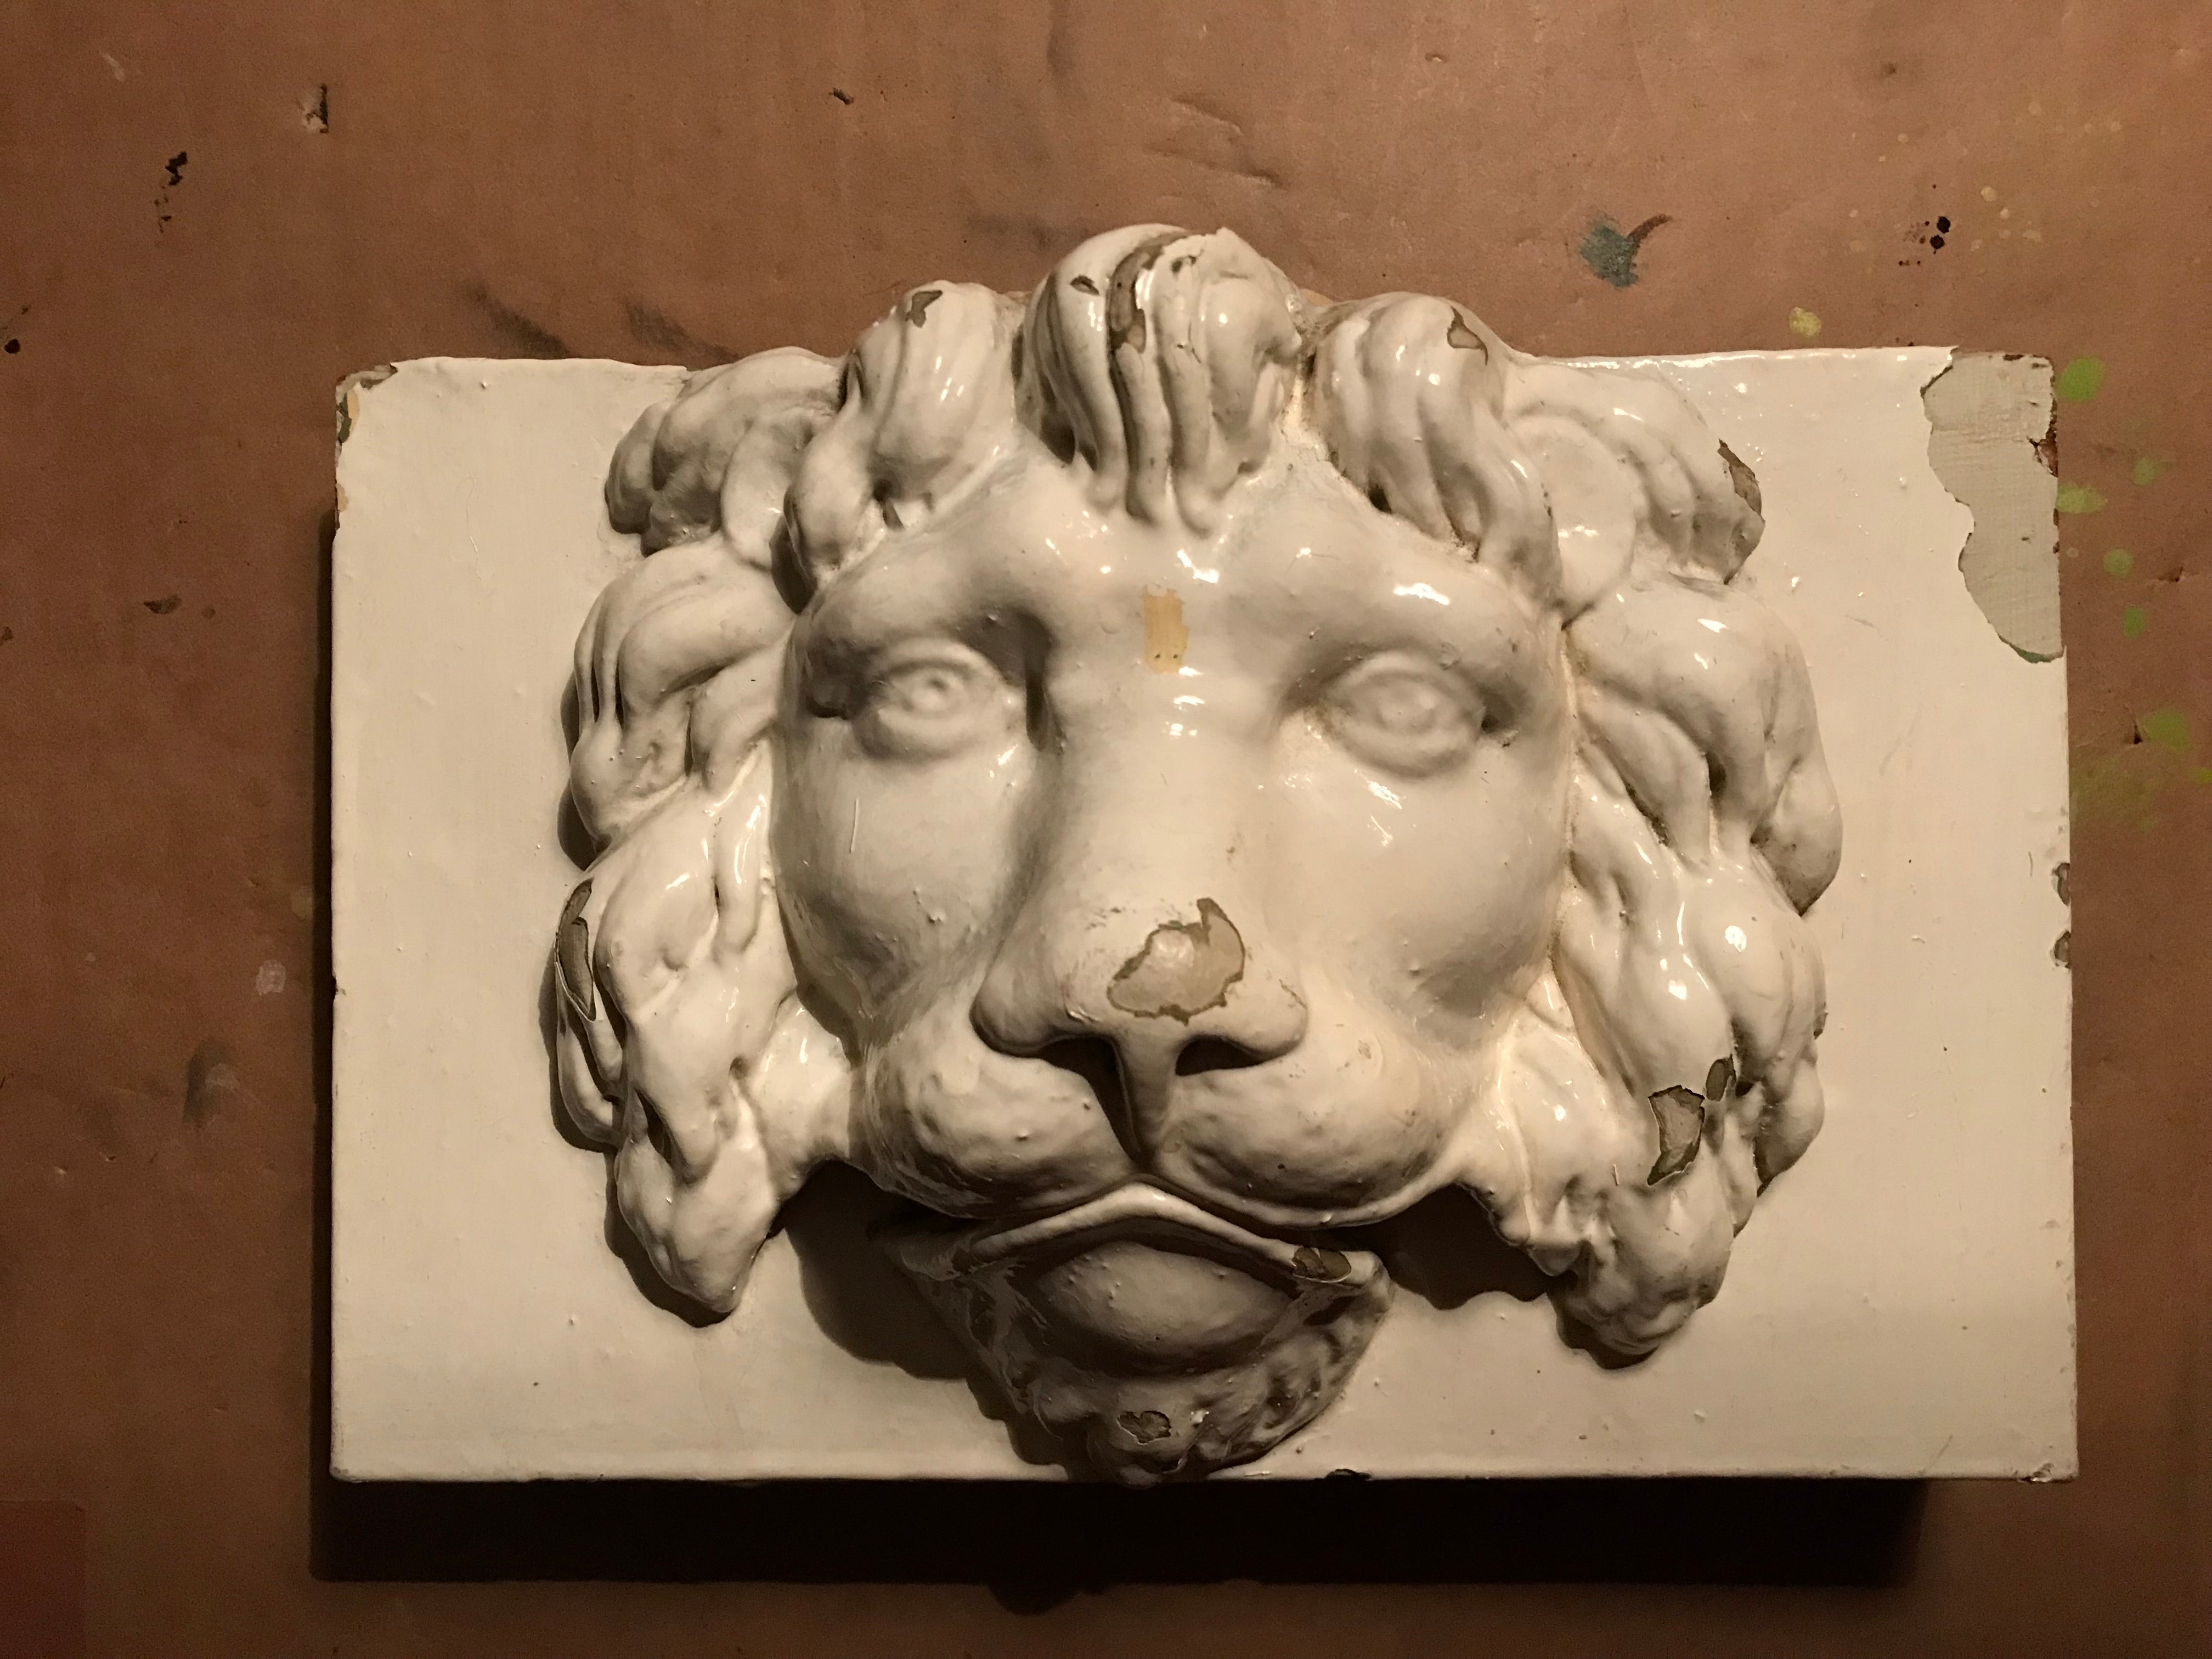 Antique Lion Face with cream paint.